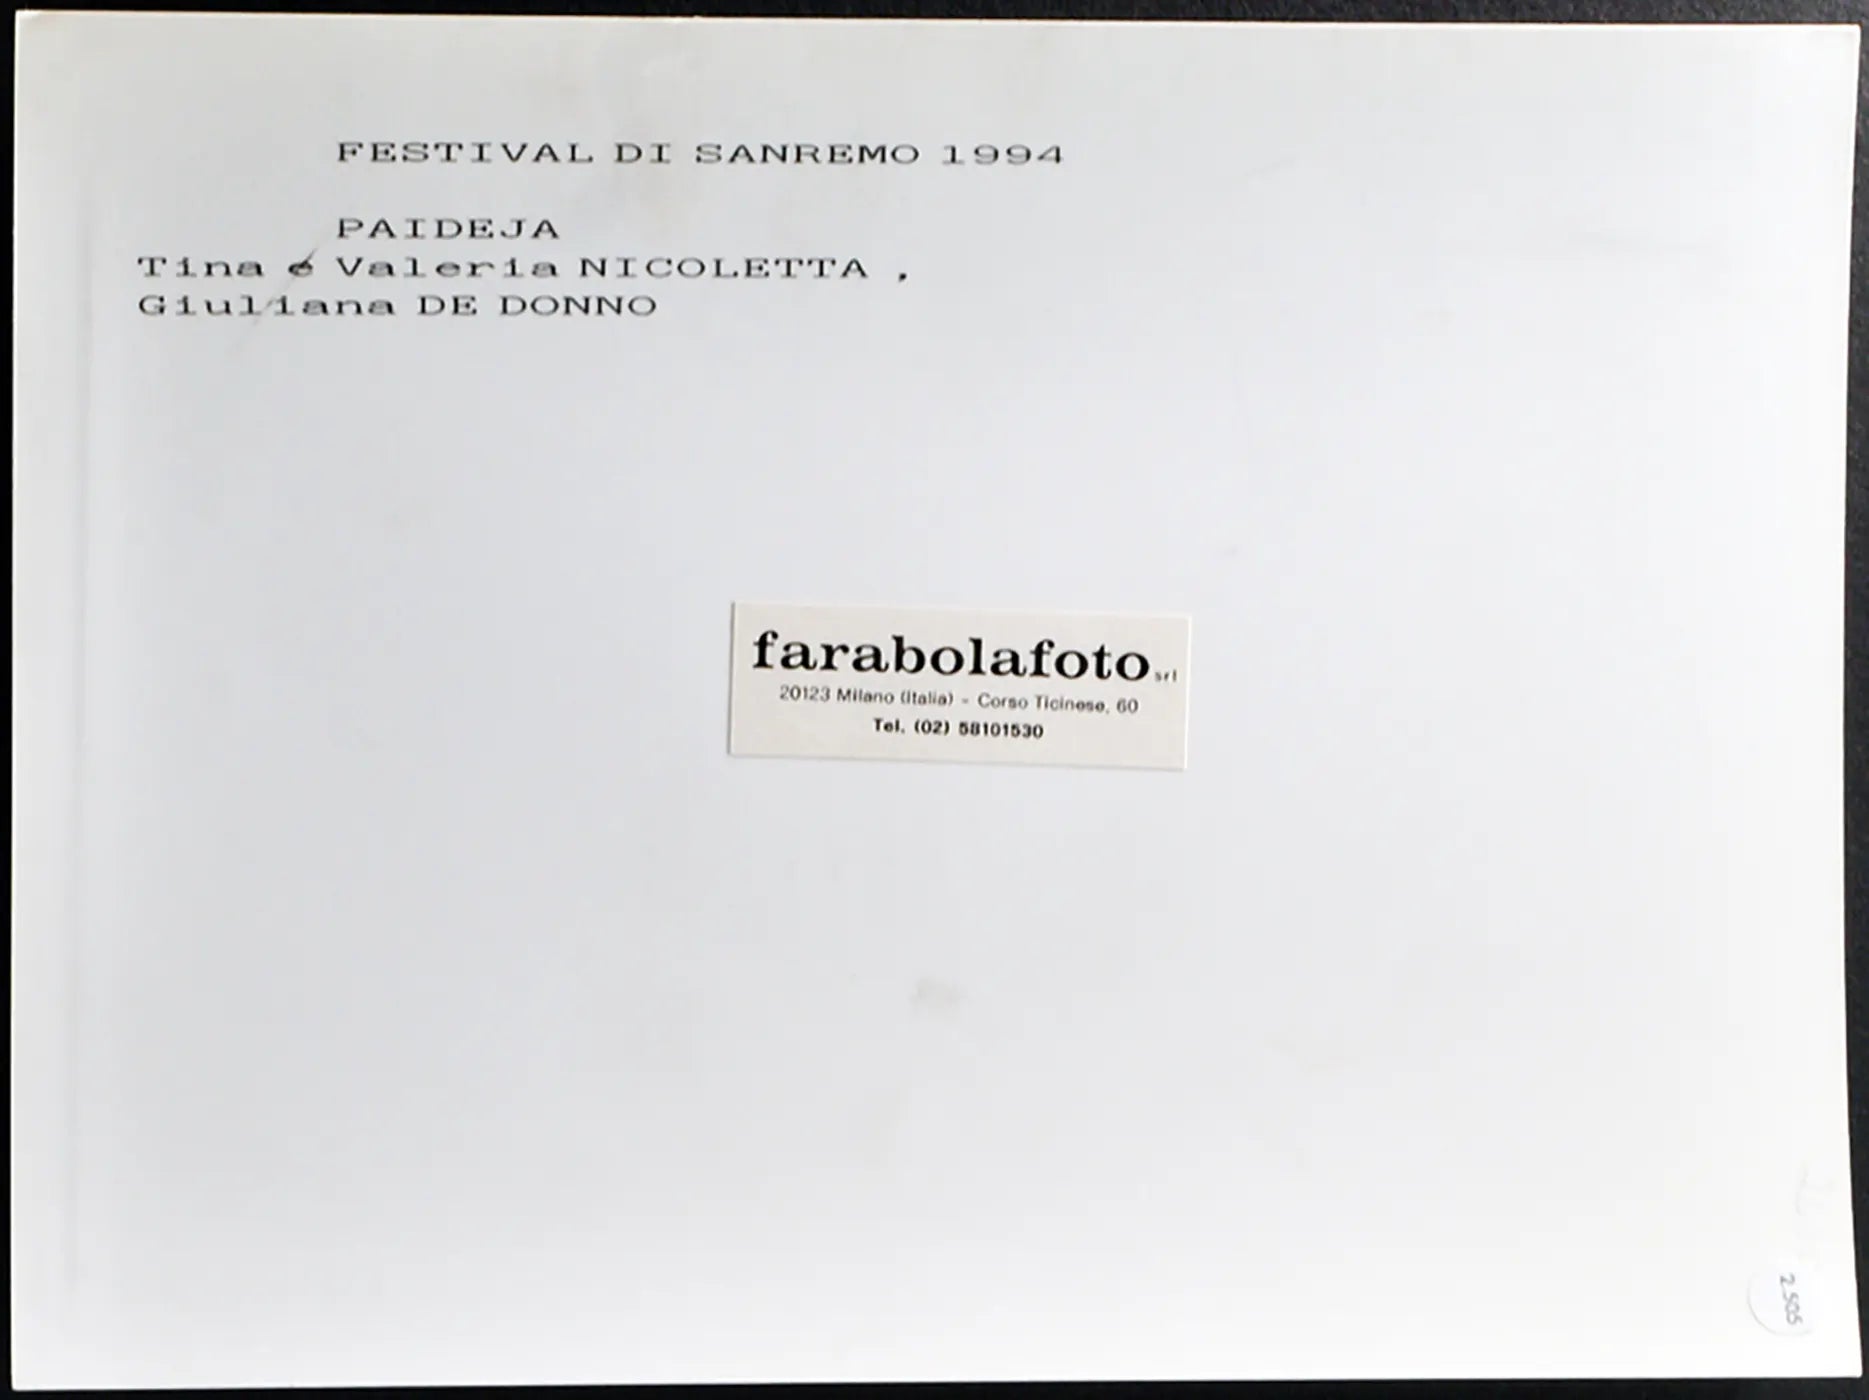 Festival di Sanremo 1994 I Paideja Ft 2505 - Stampa 24x18 cm - Farabola Stampa ai sali d'argento